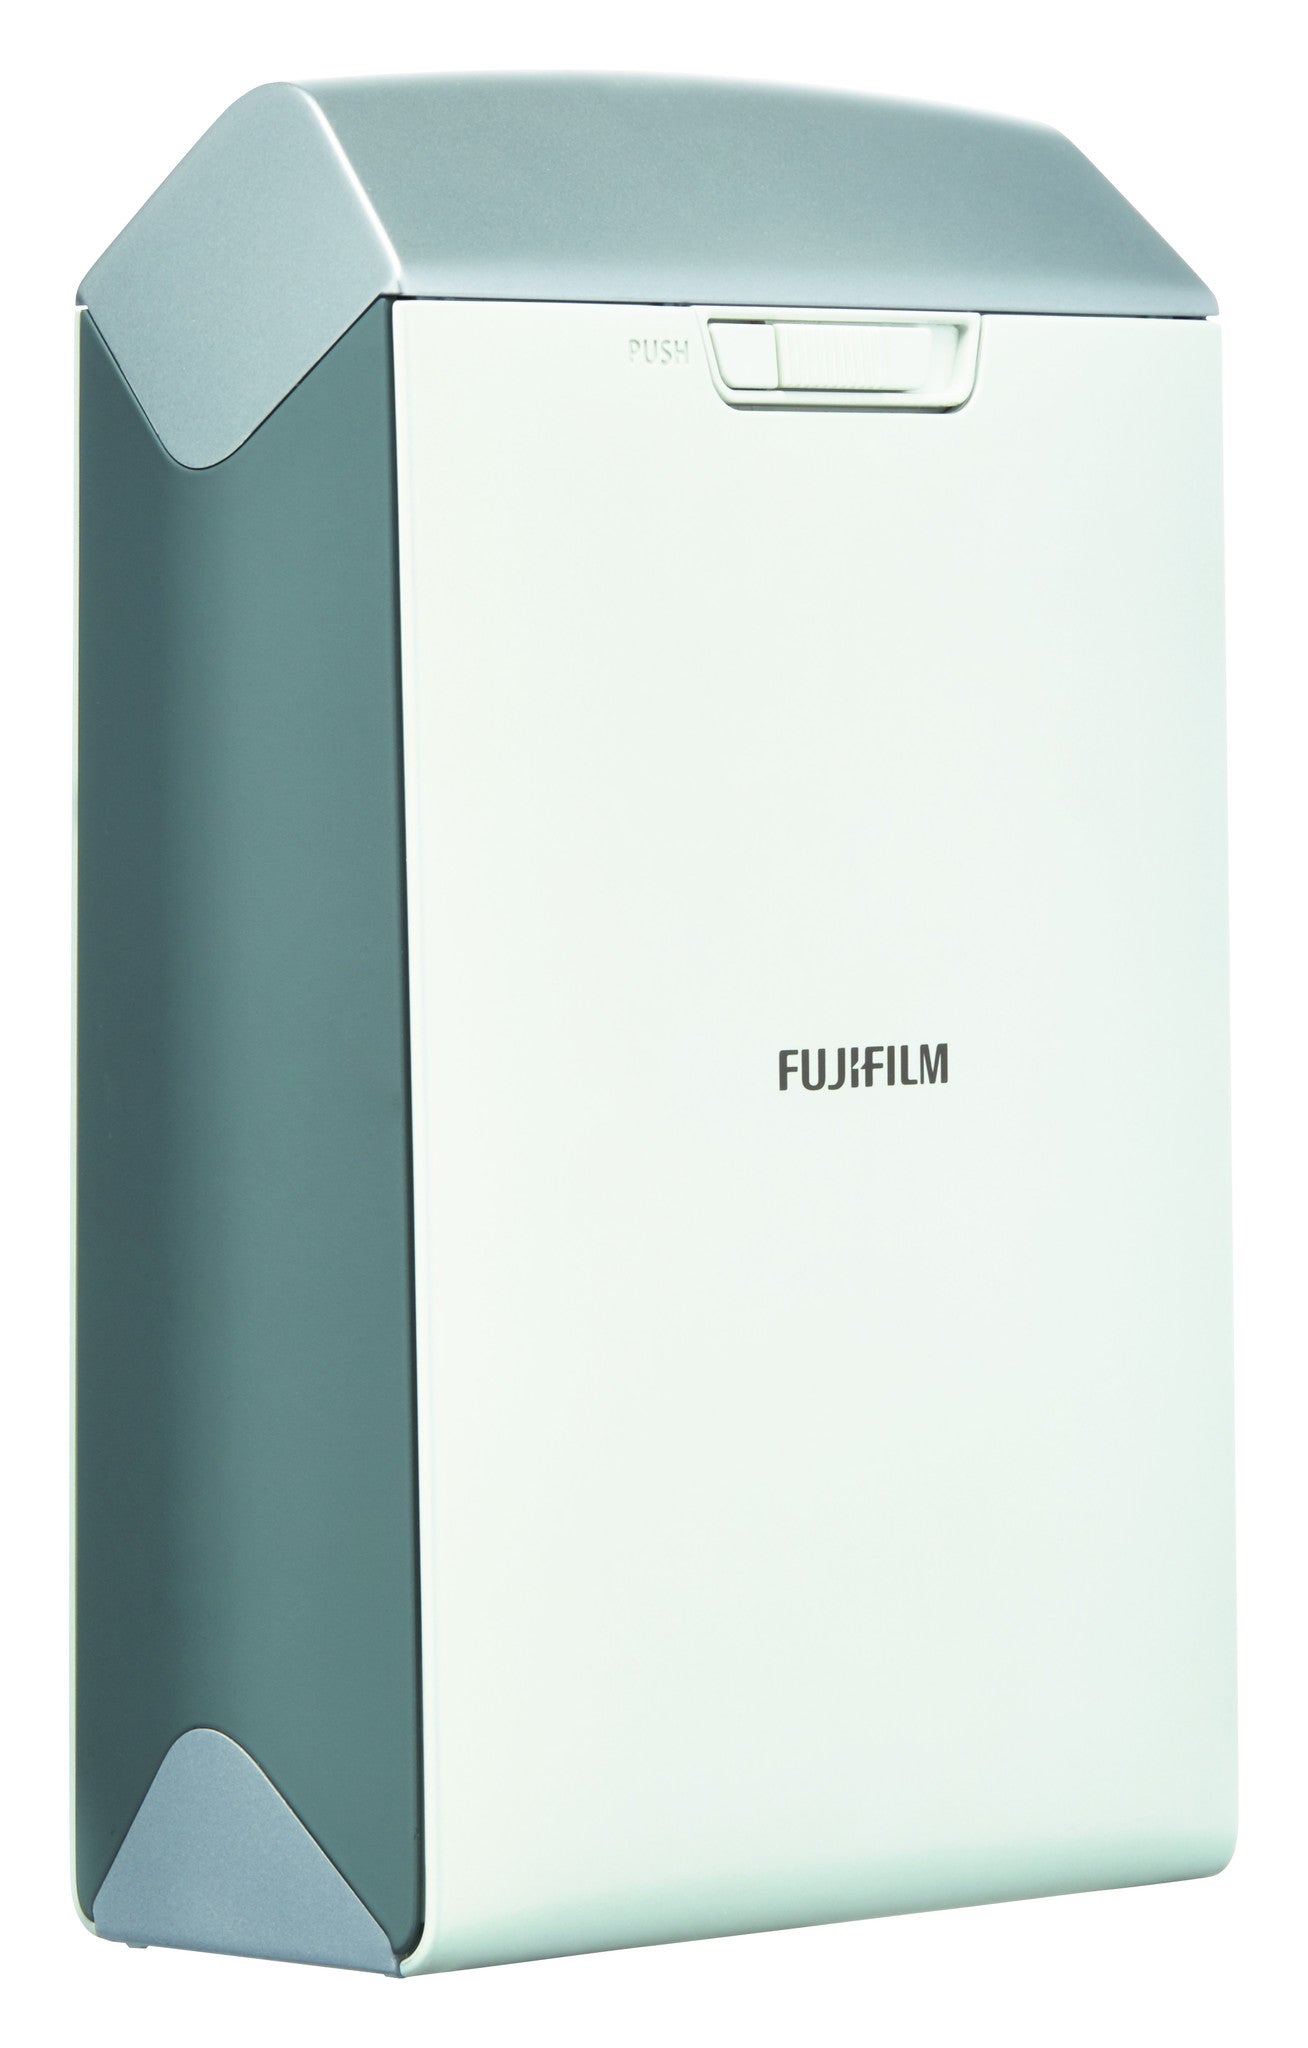 Fujifilm INSTAX Share Smartphone Printer SP-2 Silver, printers small format, Fujifilm - Pictureline  - 3